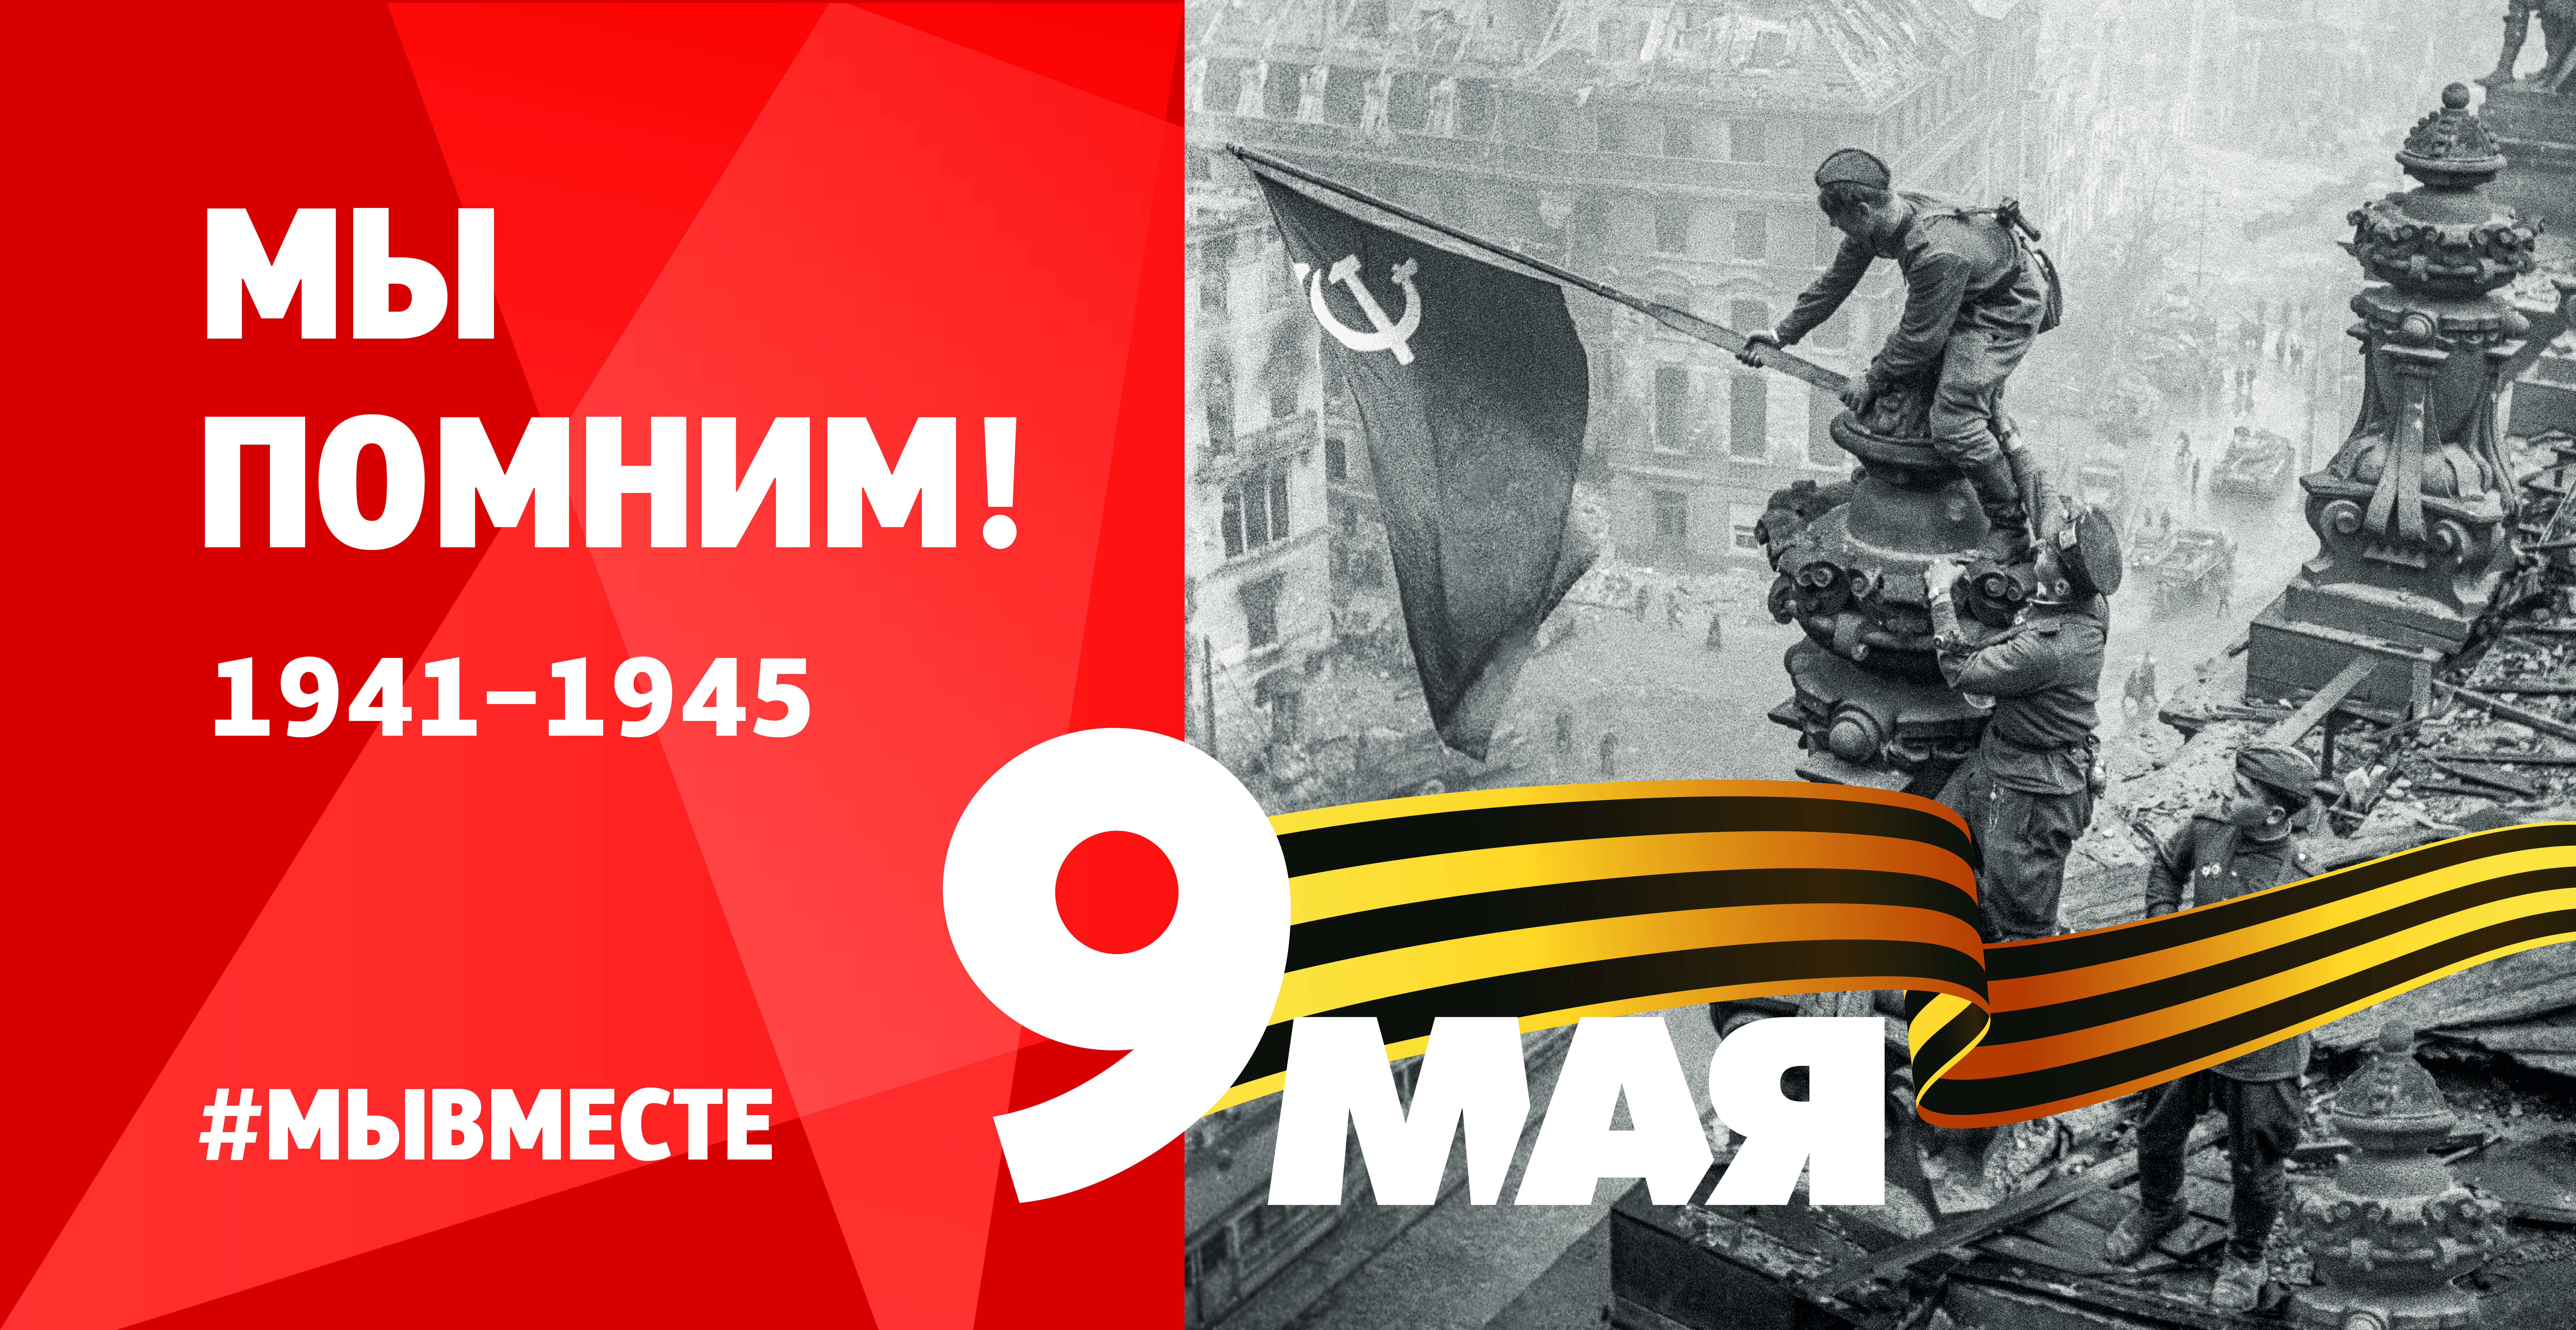 Мероприятия, посвященные 78-й годовщине Победы советского народа в Великой Отечественной войне 1941-1945 годов и 78-летию окончания Второй мировой войны